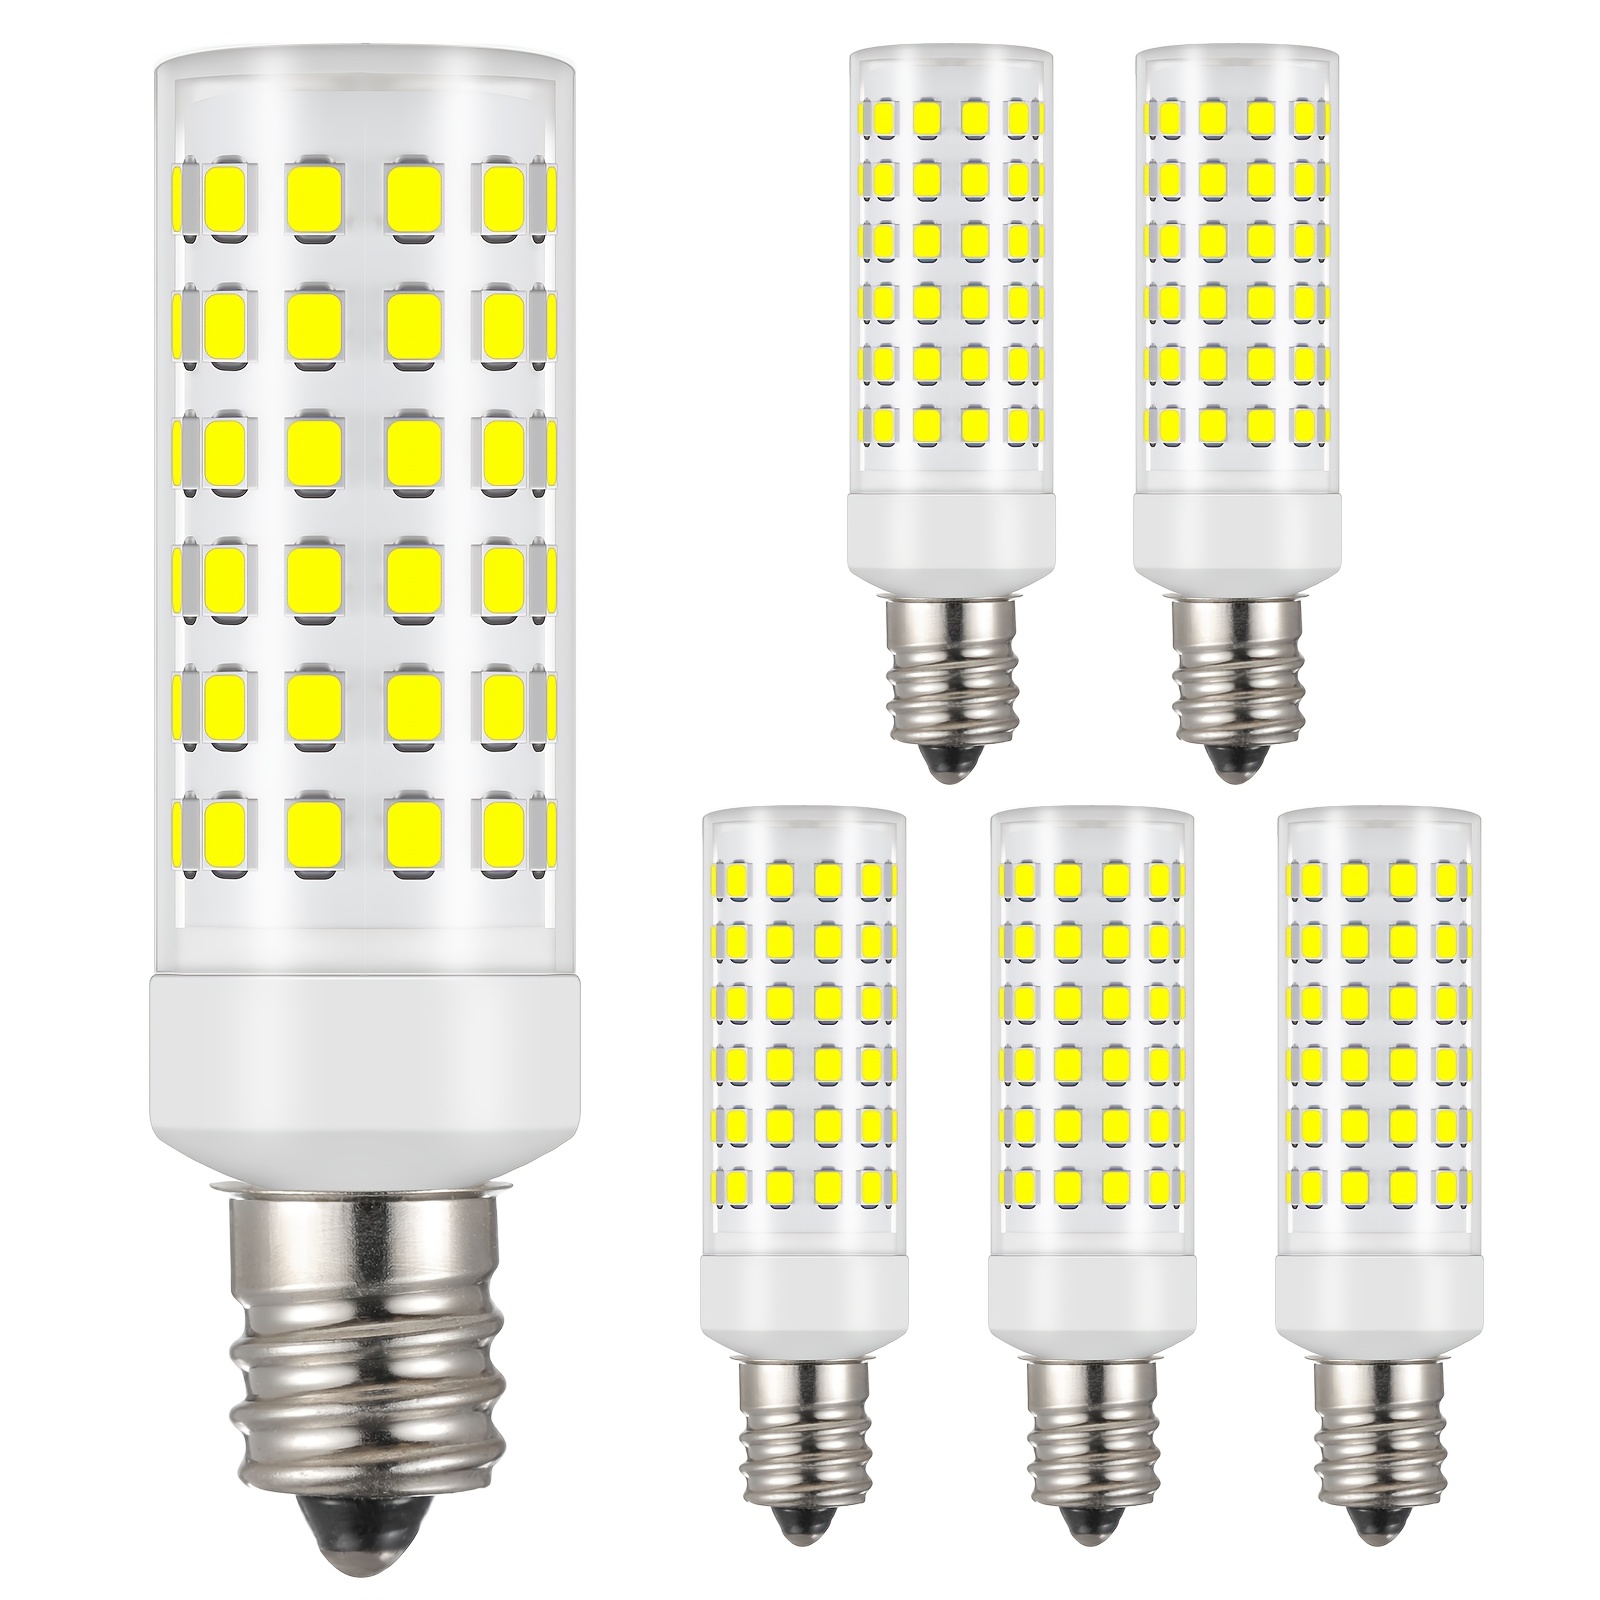 Lot de 6 ampoules LED G9, équivalent 5 W 50 W lampe halogène, blanc froid  6000 K 500 lm non dimmable sans scintillement AC 220-240 V pour éclairage  de plafond, chambre salon cuisine jardin